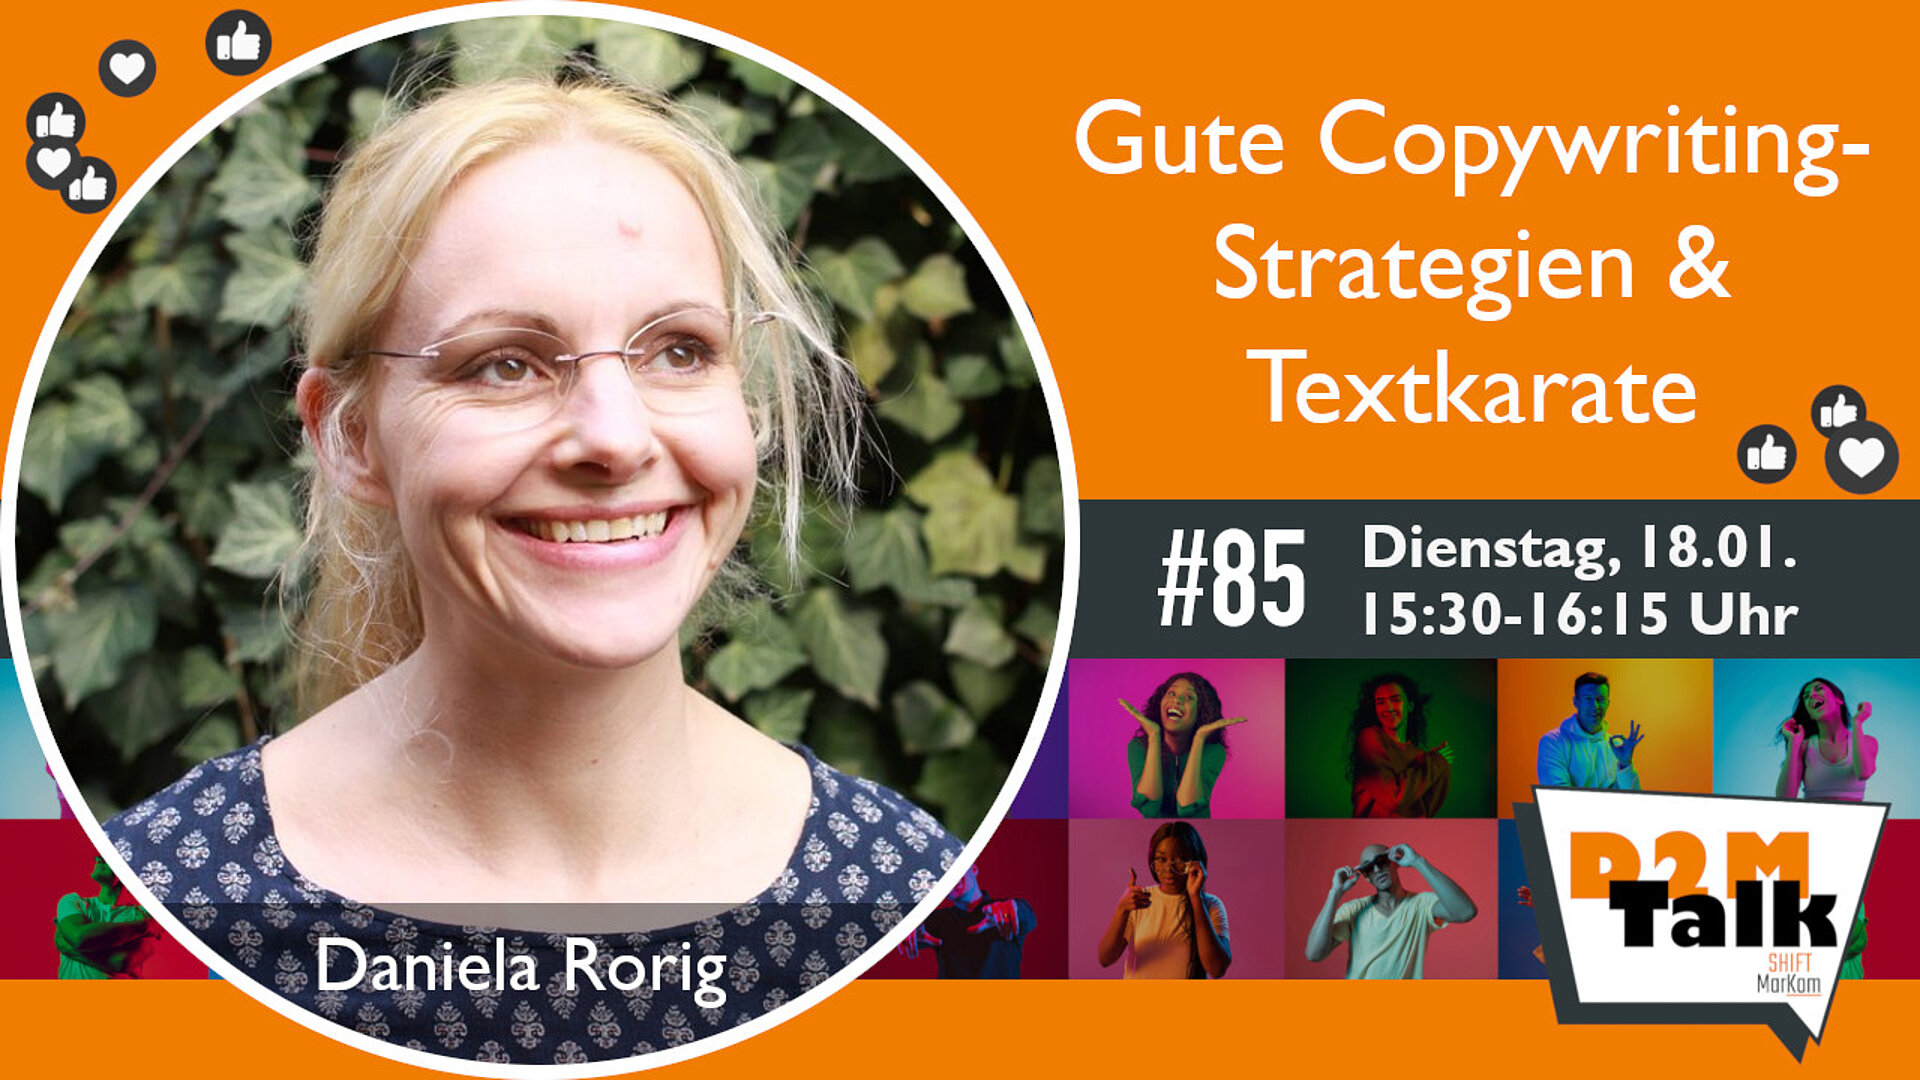 Im Gespräch mit Daniela Rorig zu guten Copywriting-Strategien & Textkarate